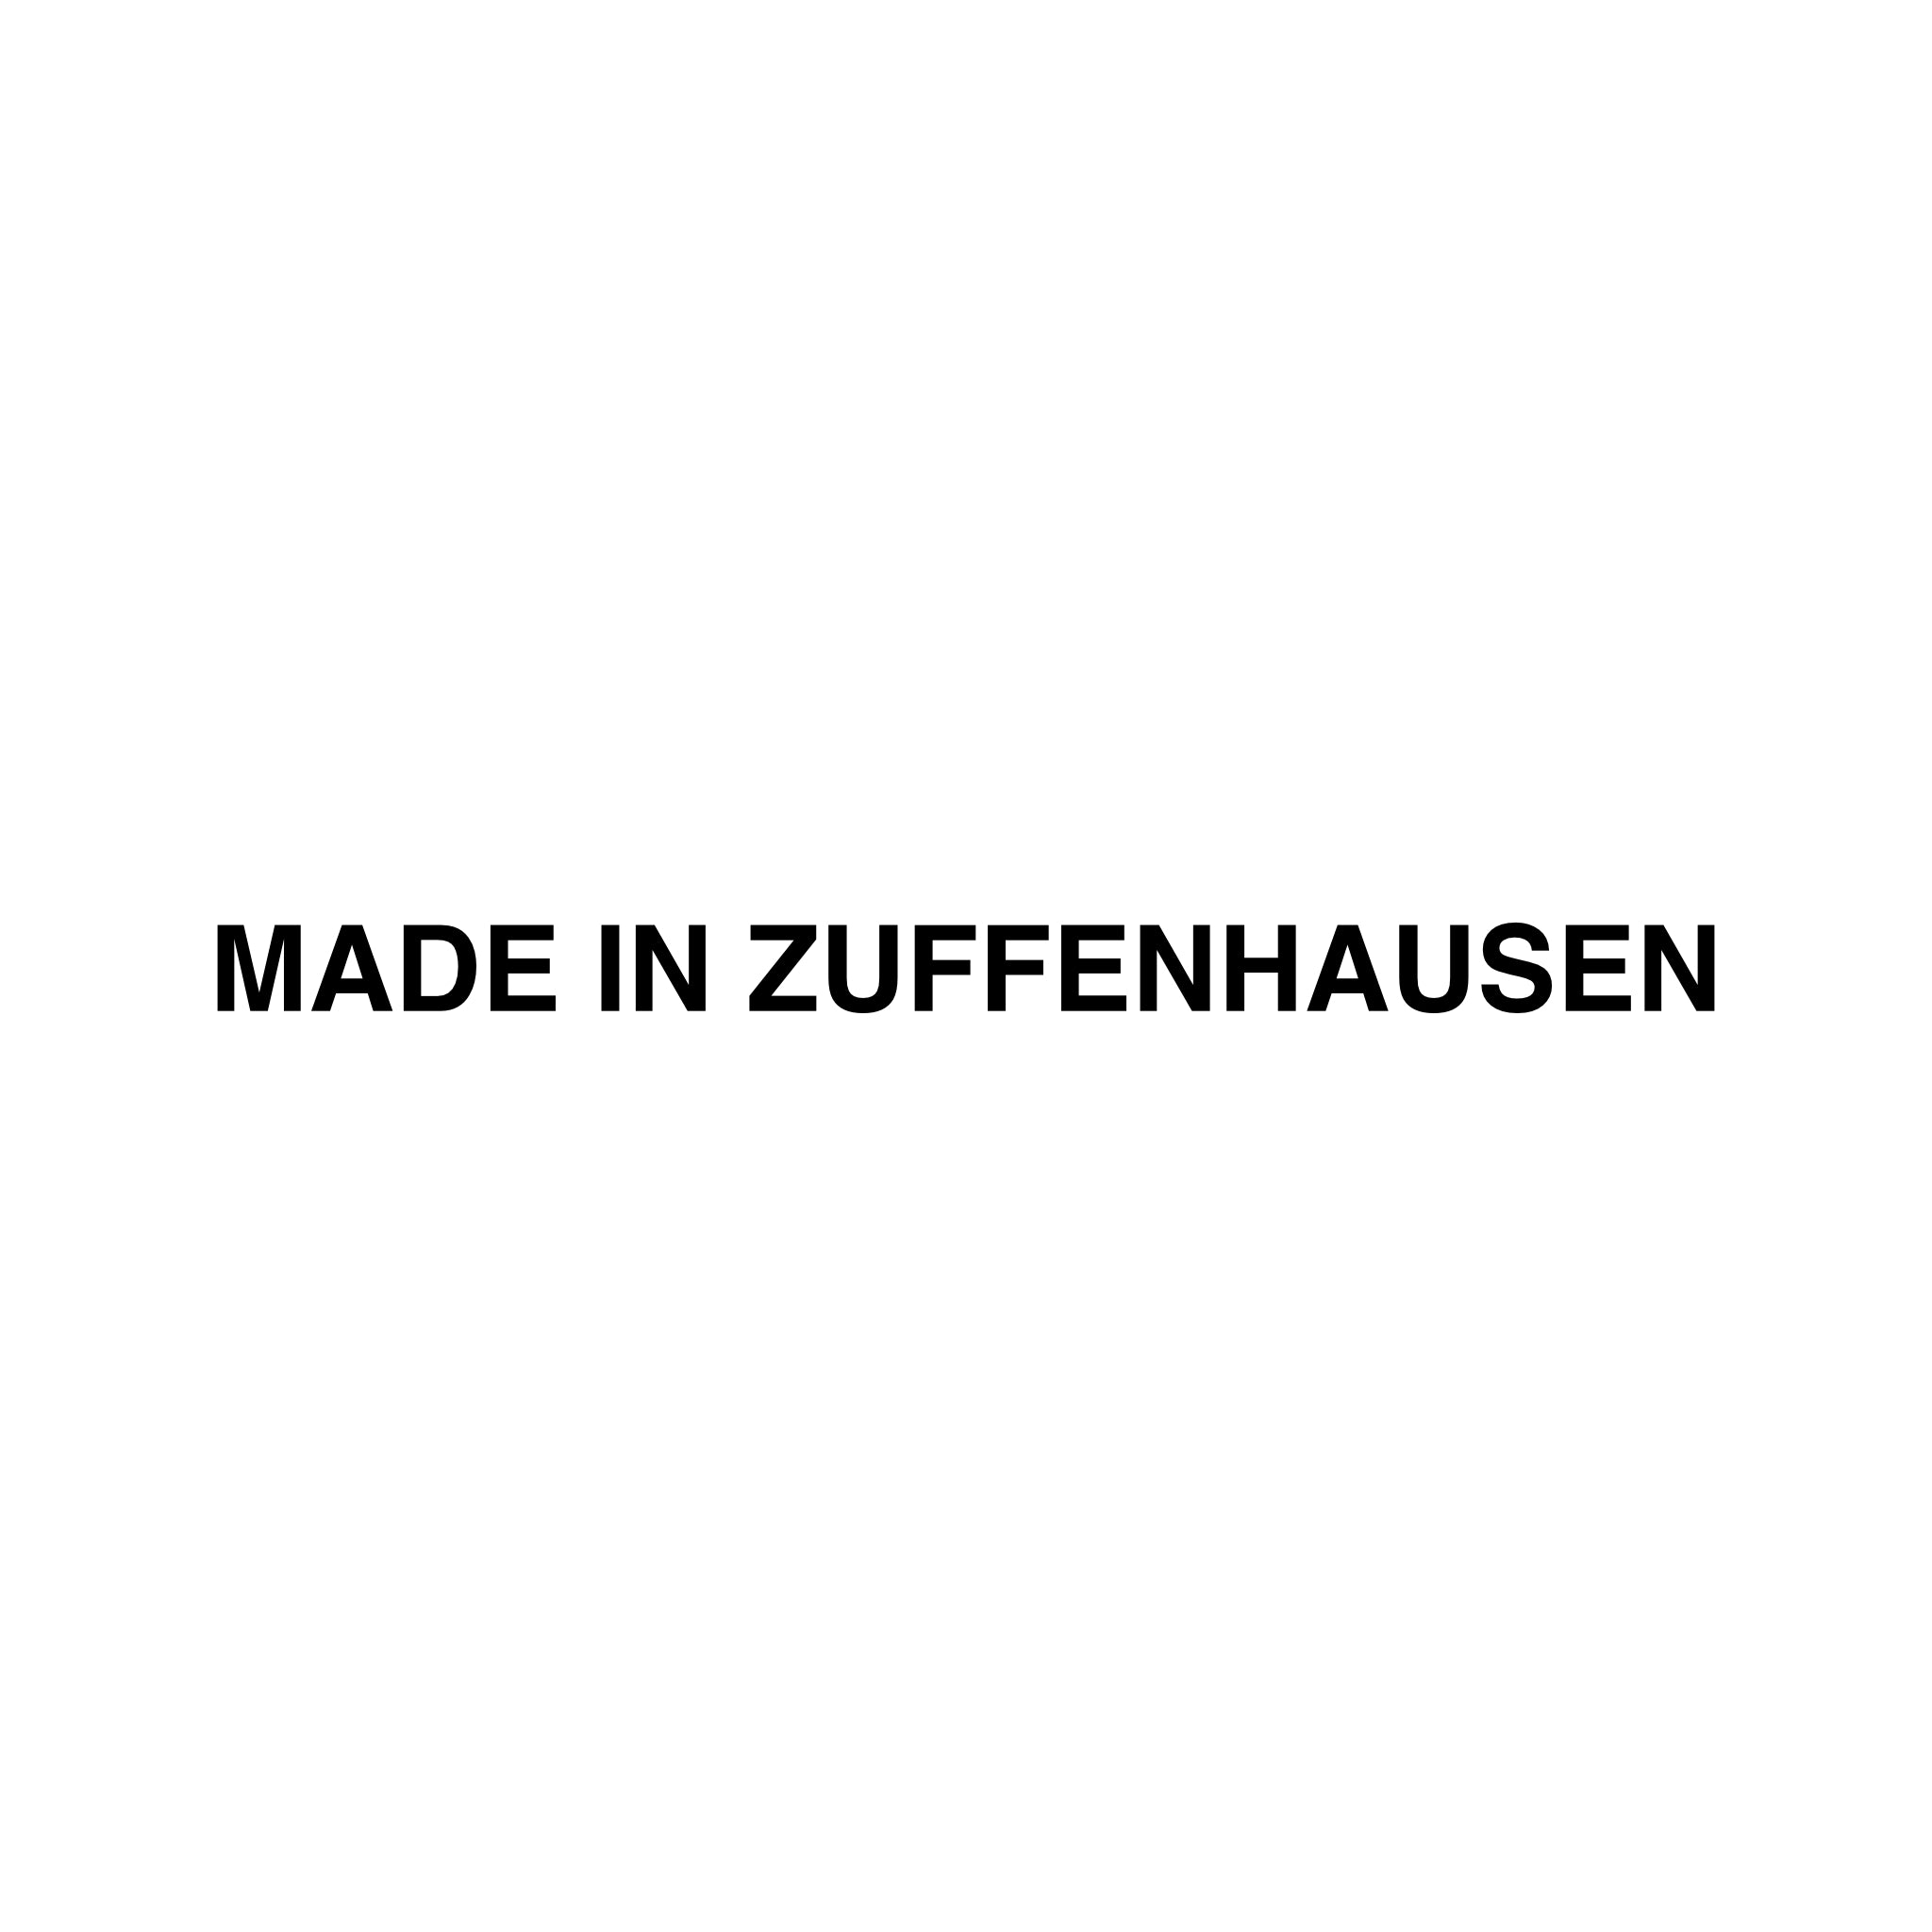 sticker made in zuffenhausen